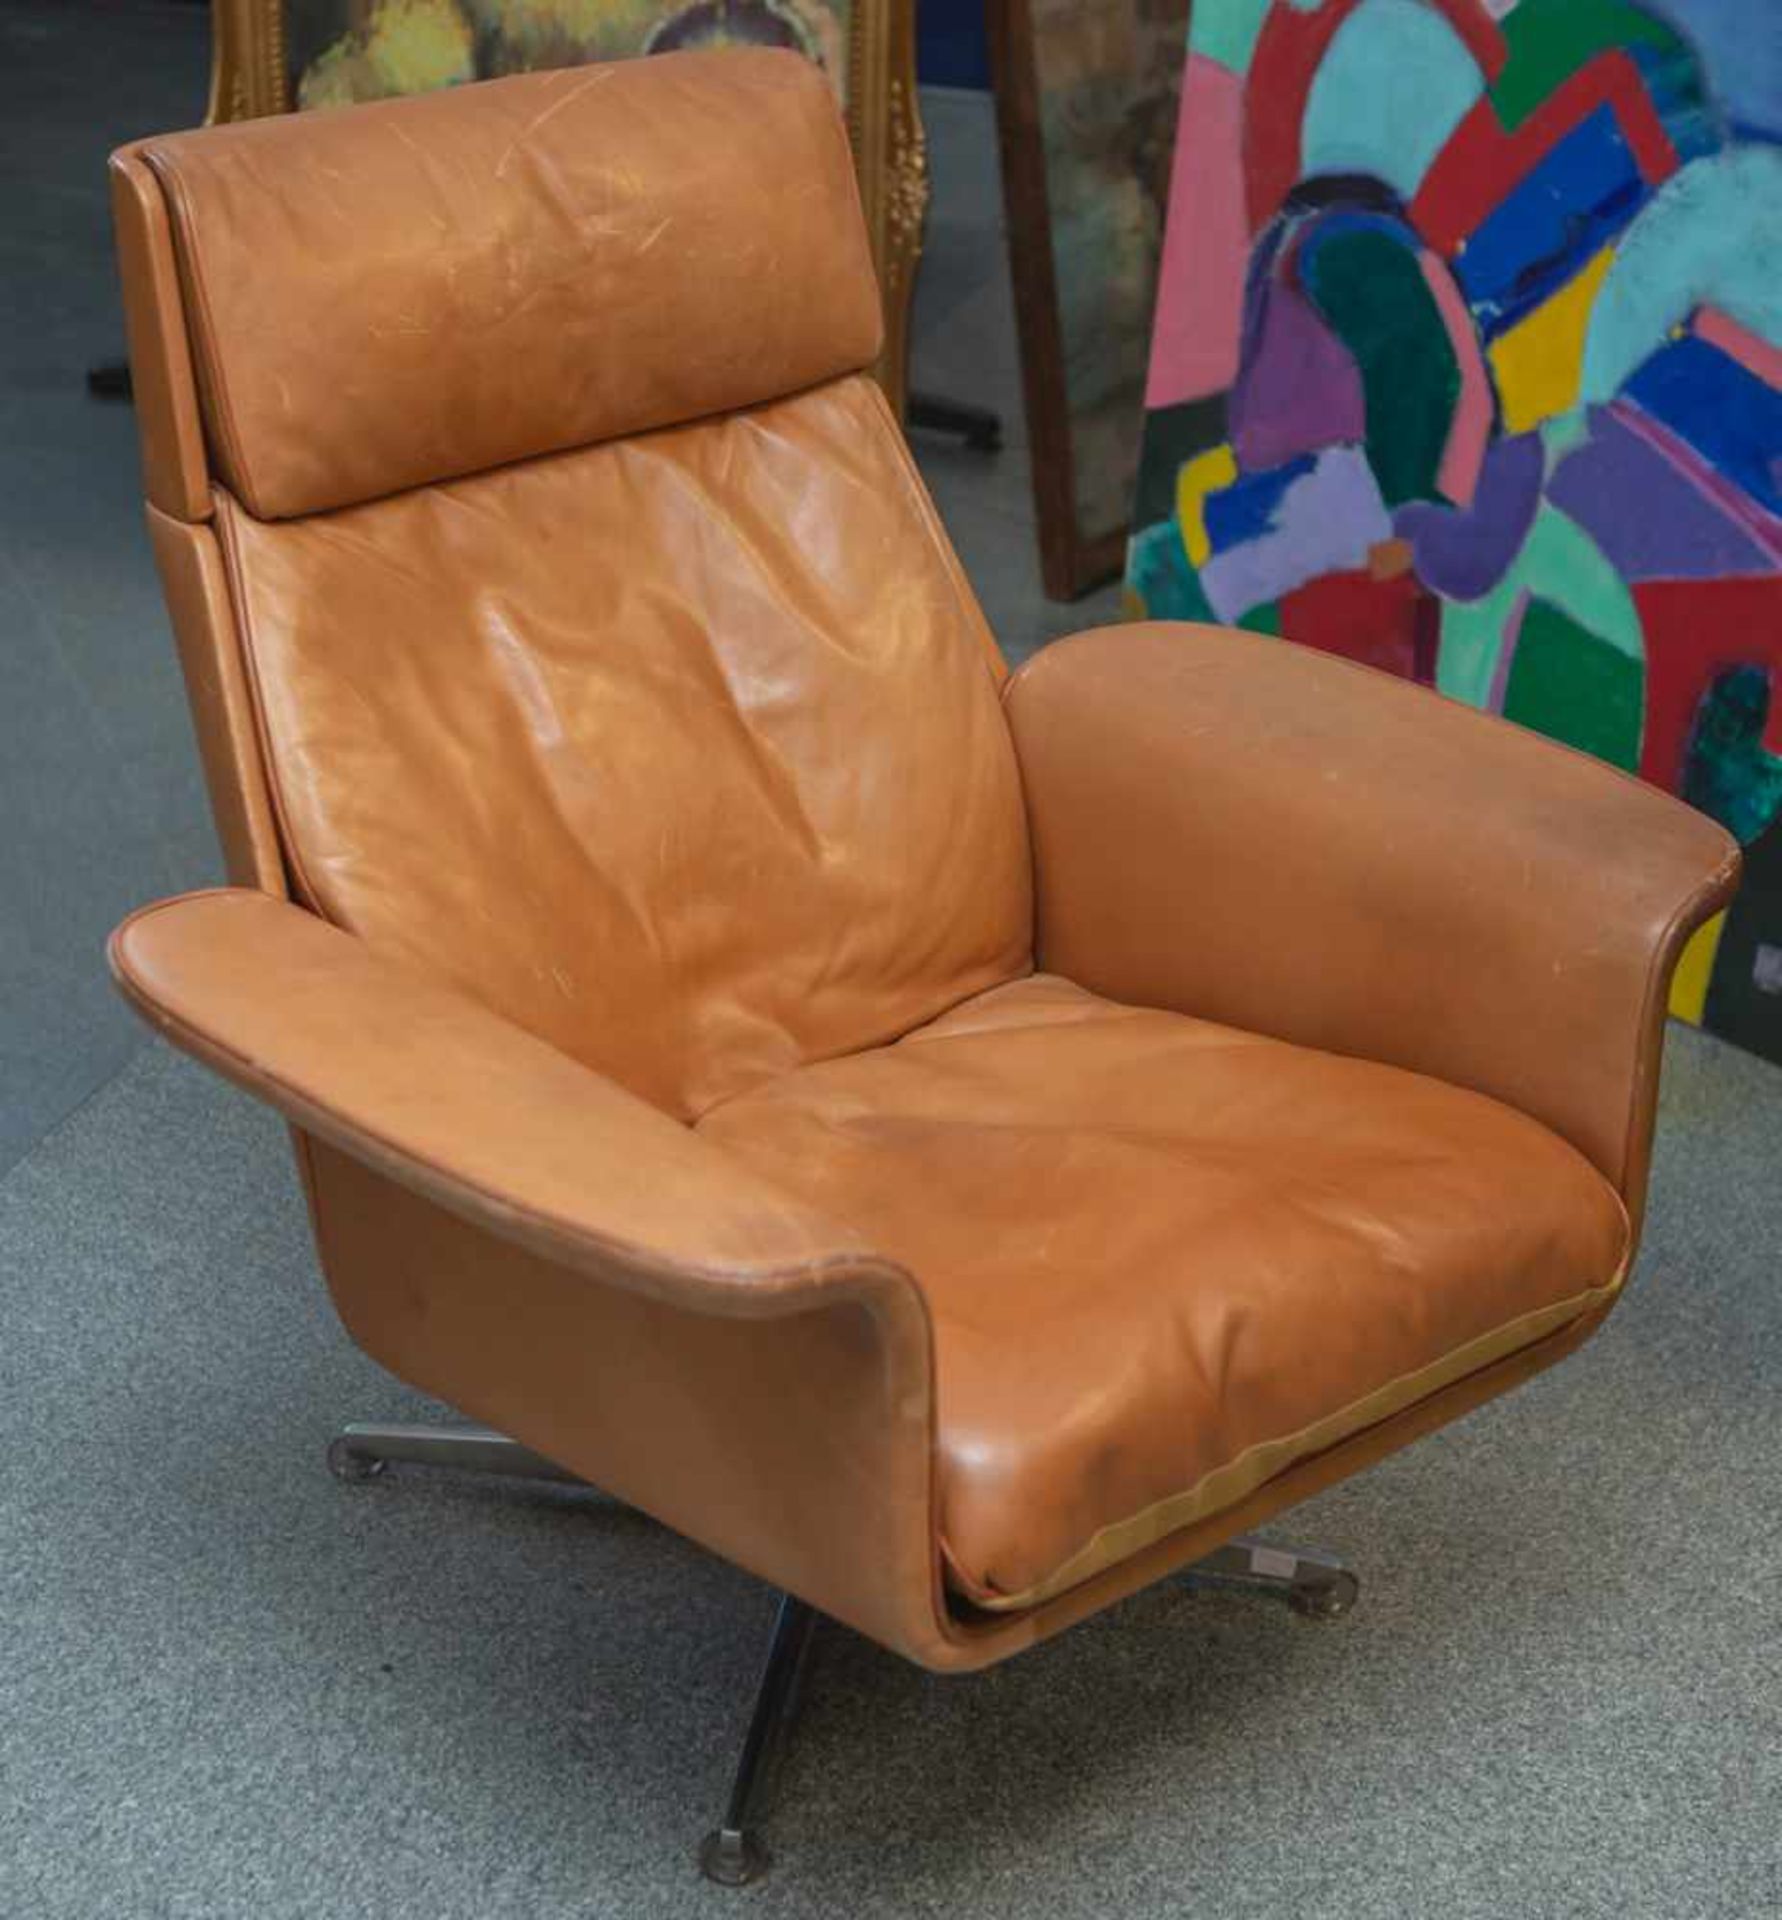 Retro-Design-Sessel, 1970er Jahre, rehbraunes Leder.